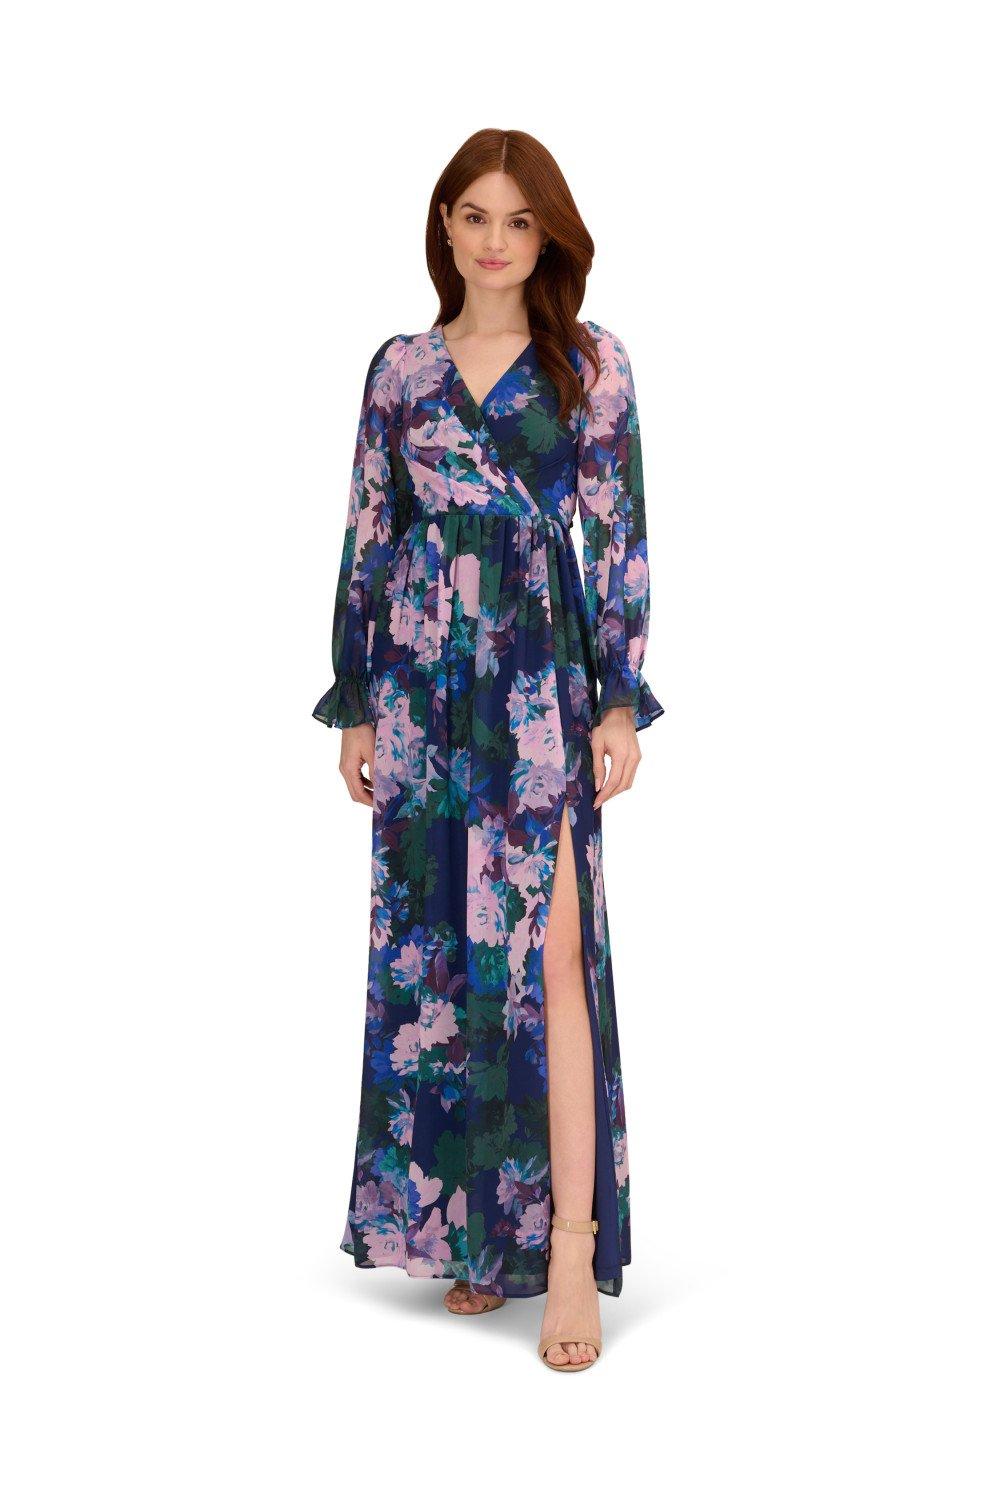 Шифоновое платье с цветочным принтом Adrianna Papell, мультиколор цена и фото